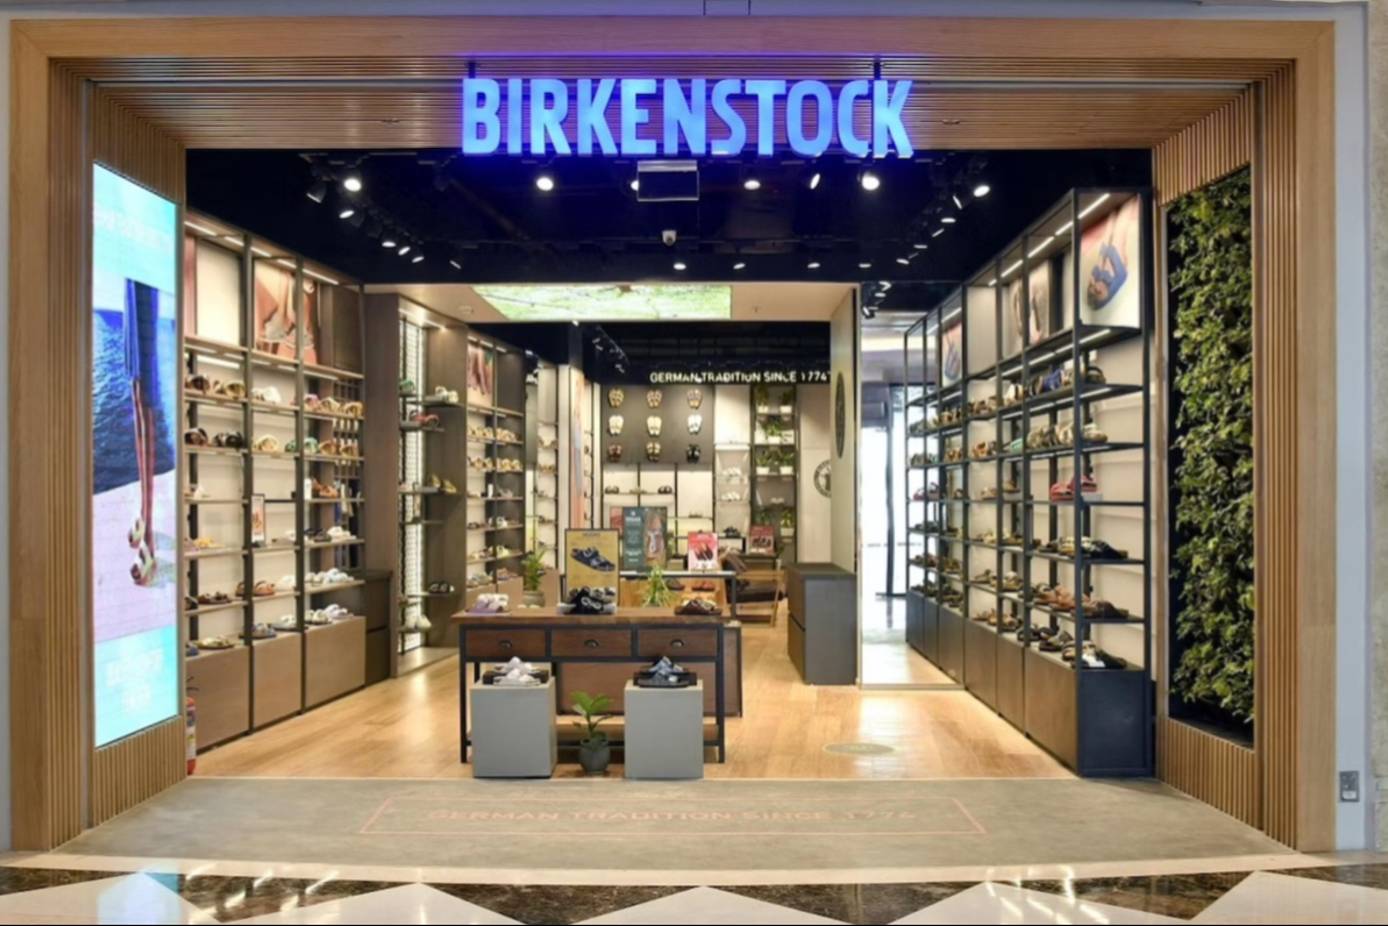 Leeds Retailer HIP Store Launches Birkenstock